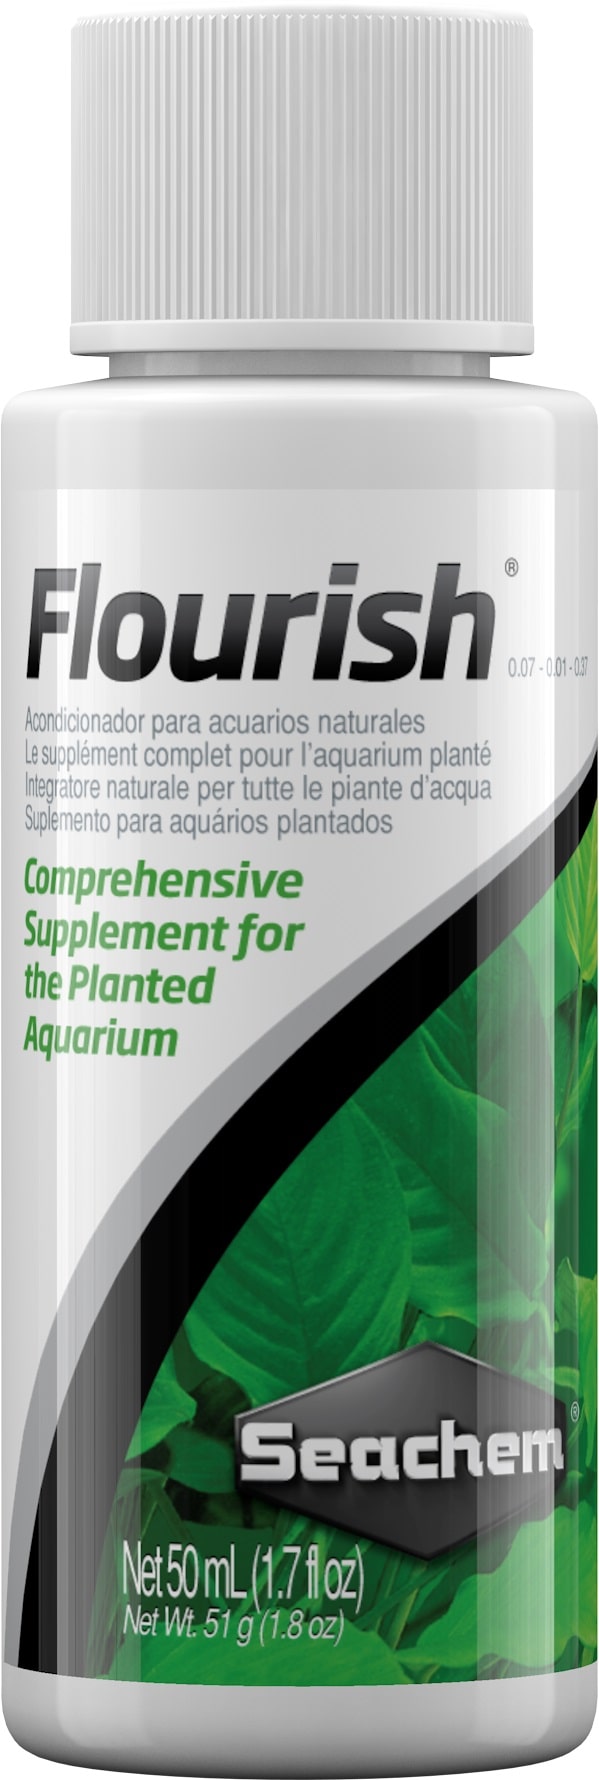 seachem-flourish-50-ml-stimulateur-de-croissance-pour-les-tiges-et-les-feuilles-min